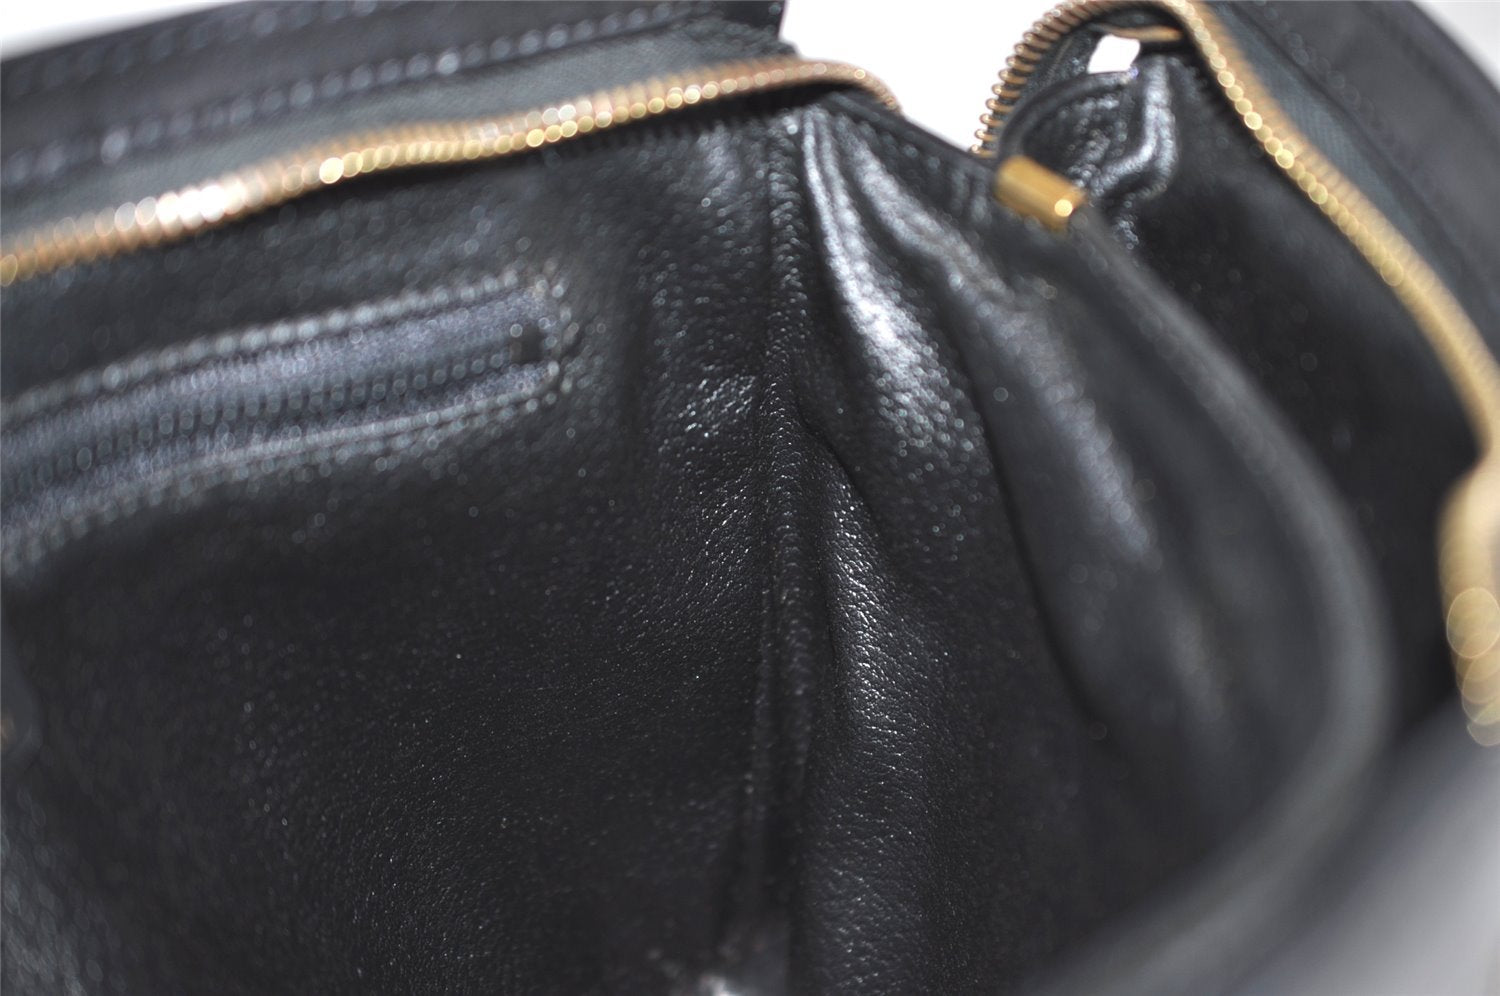 Authentic CELINE Vintage Clutch Hand Bag Purse Leather Black 5131J